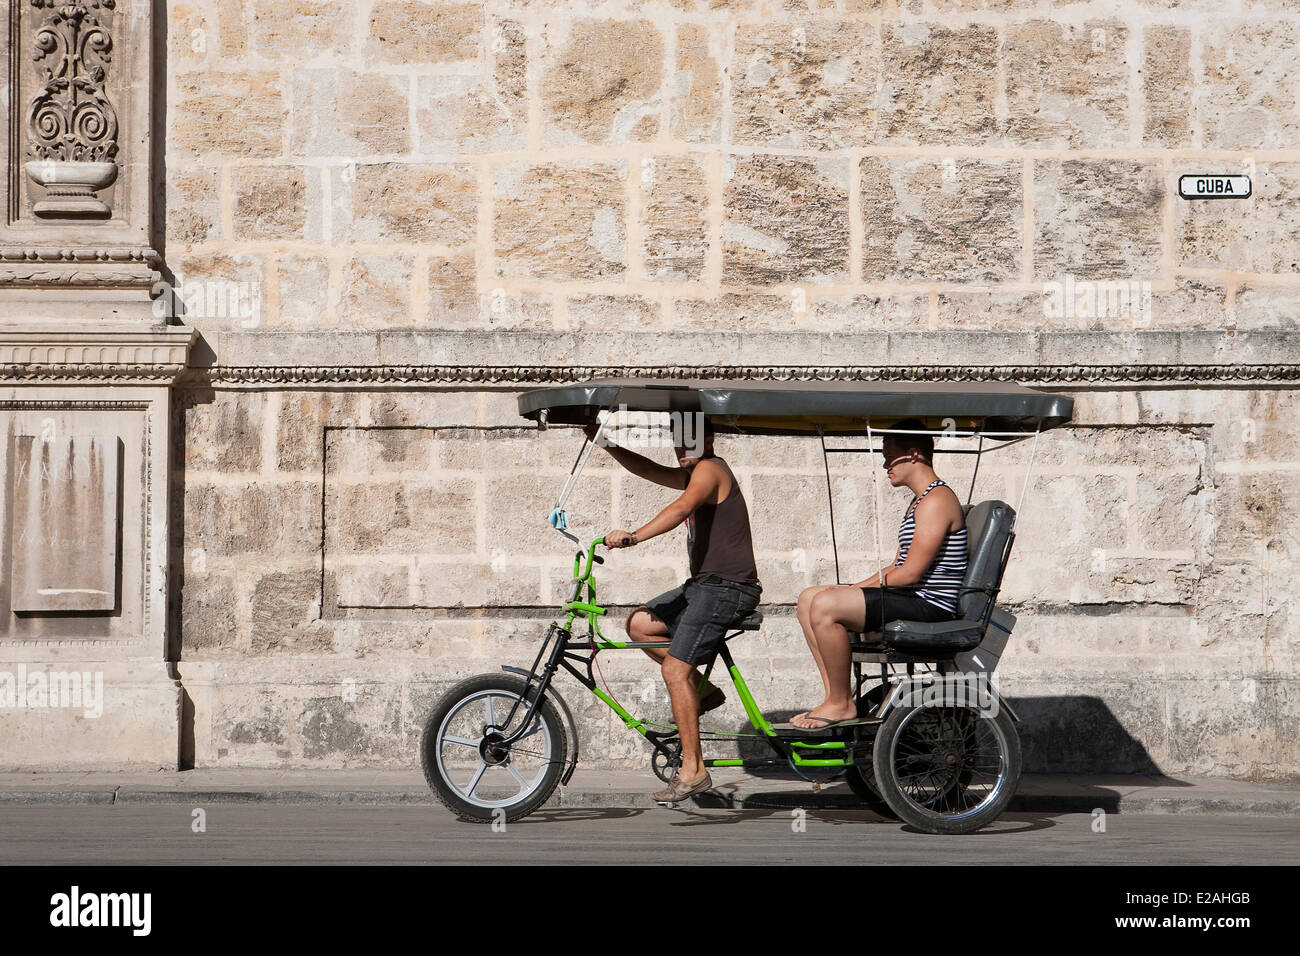 Ciudad De La Habana Provinz, Kuba, Havanna, Habana Vieja-Bezirk, Weltkulturerbe der UNESCO, Bicy Taxi vor Stockfoto